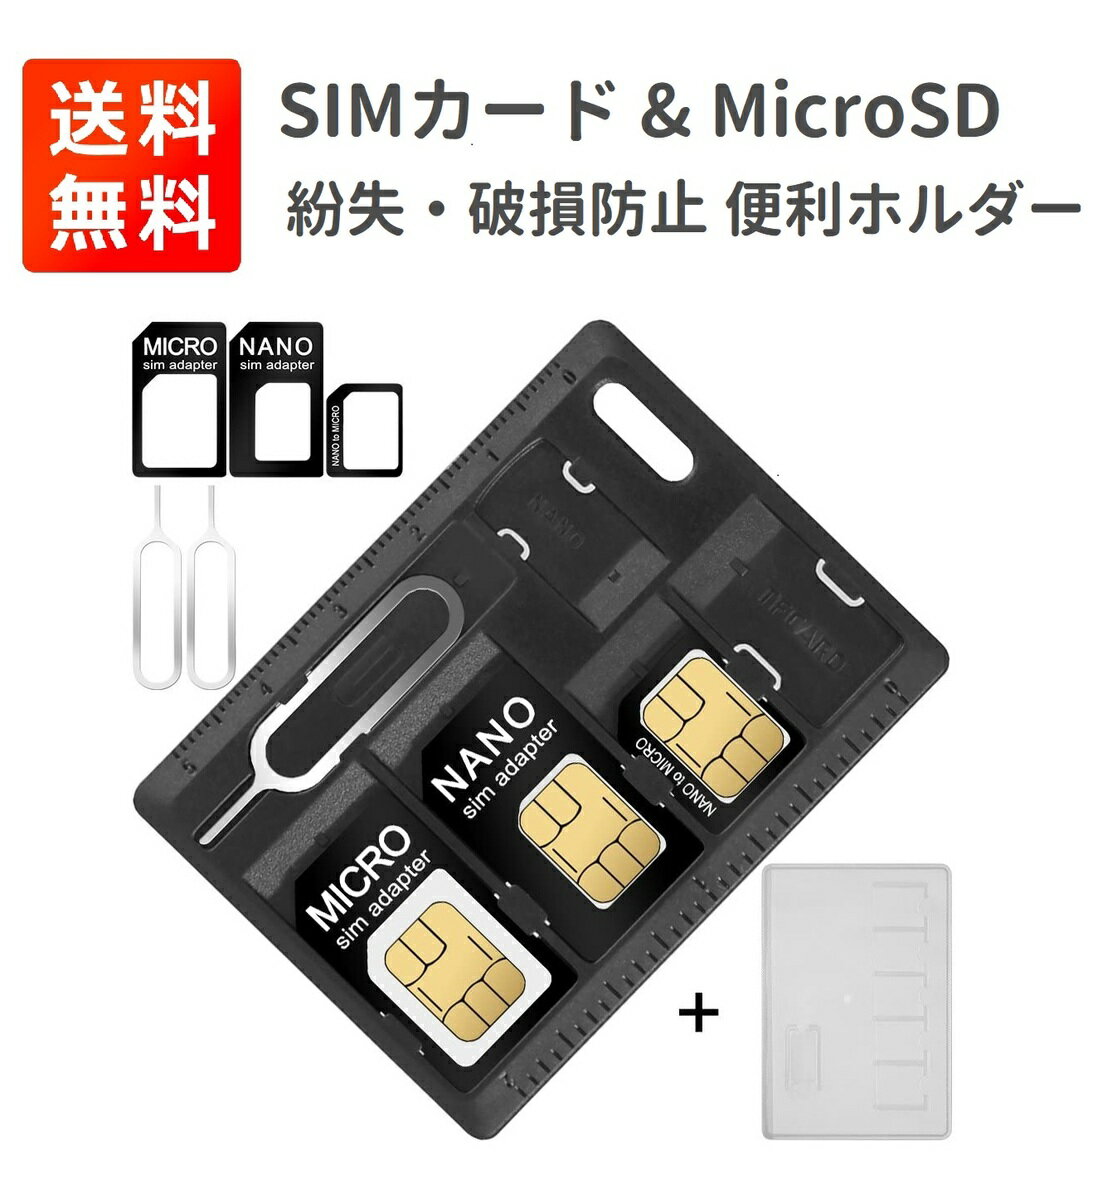 SIM カード & Micro SD ホルダー クレジットカードサイズ SIMカードリリースピン付き